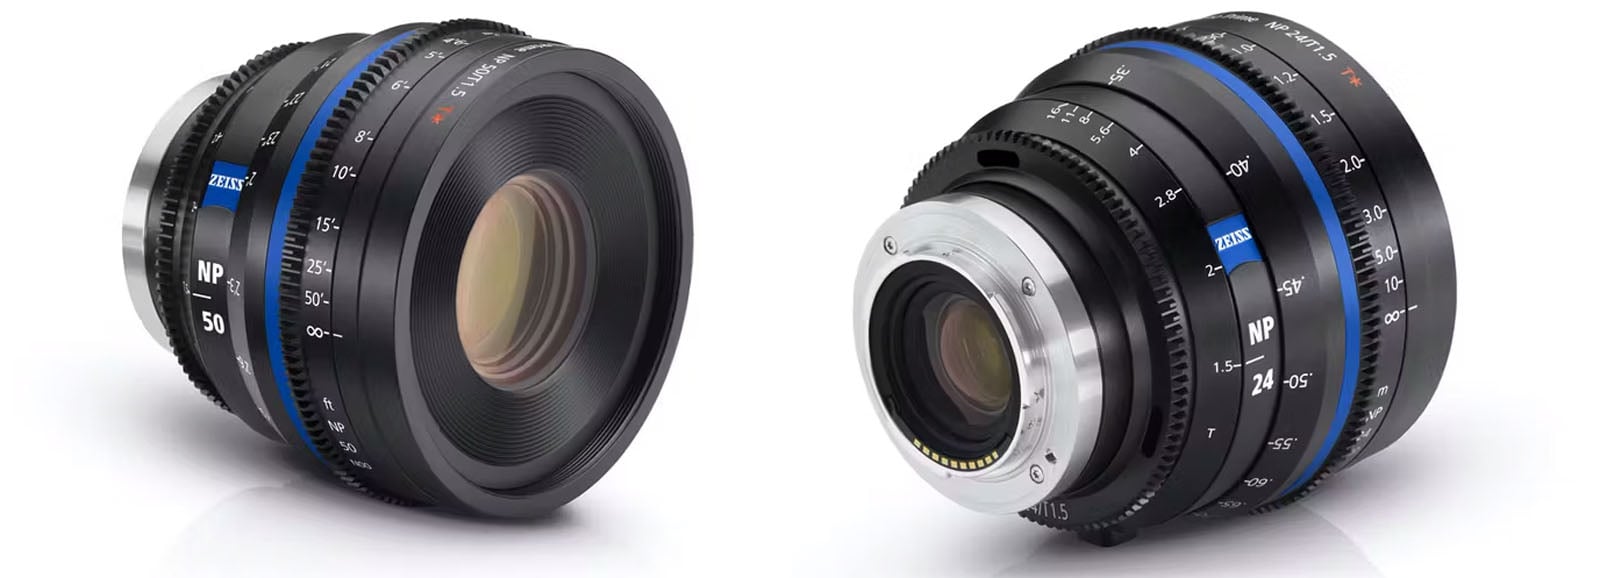 Zeiss Nano Prime cinema lenses for full-frame E-mount cameras